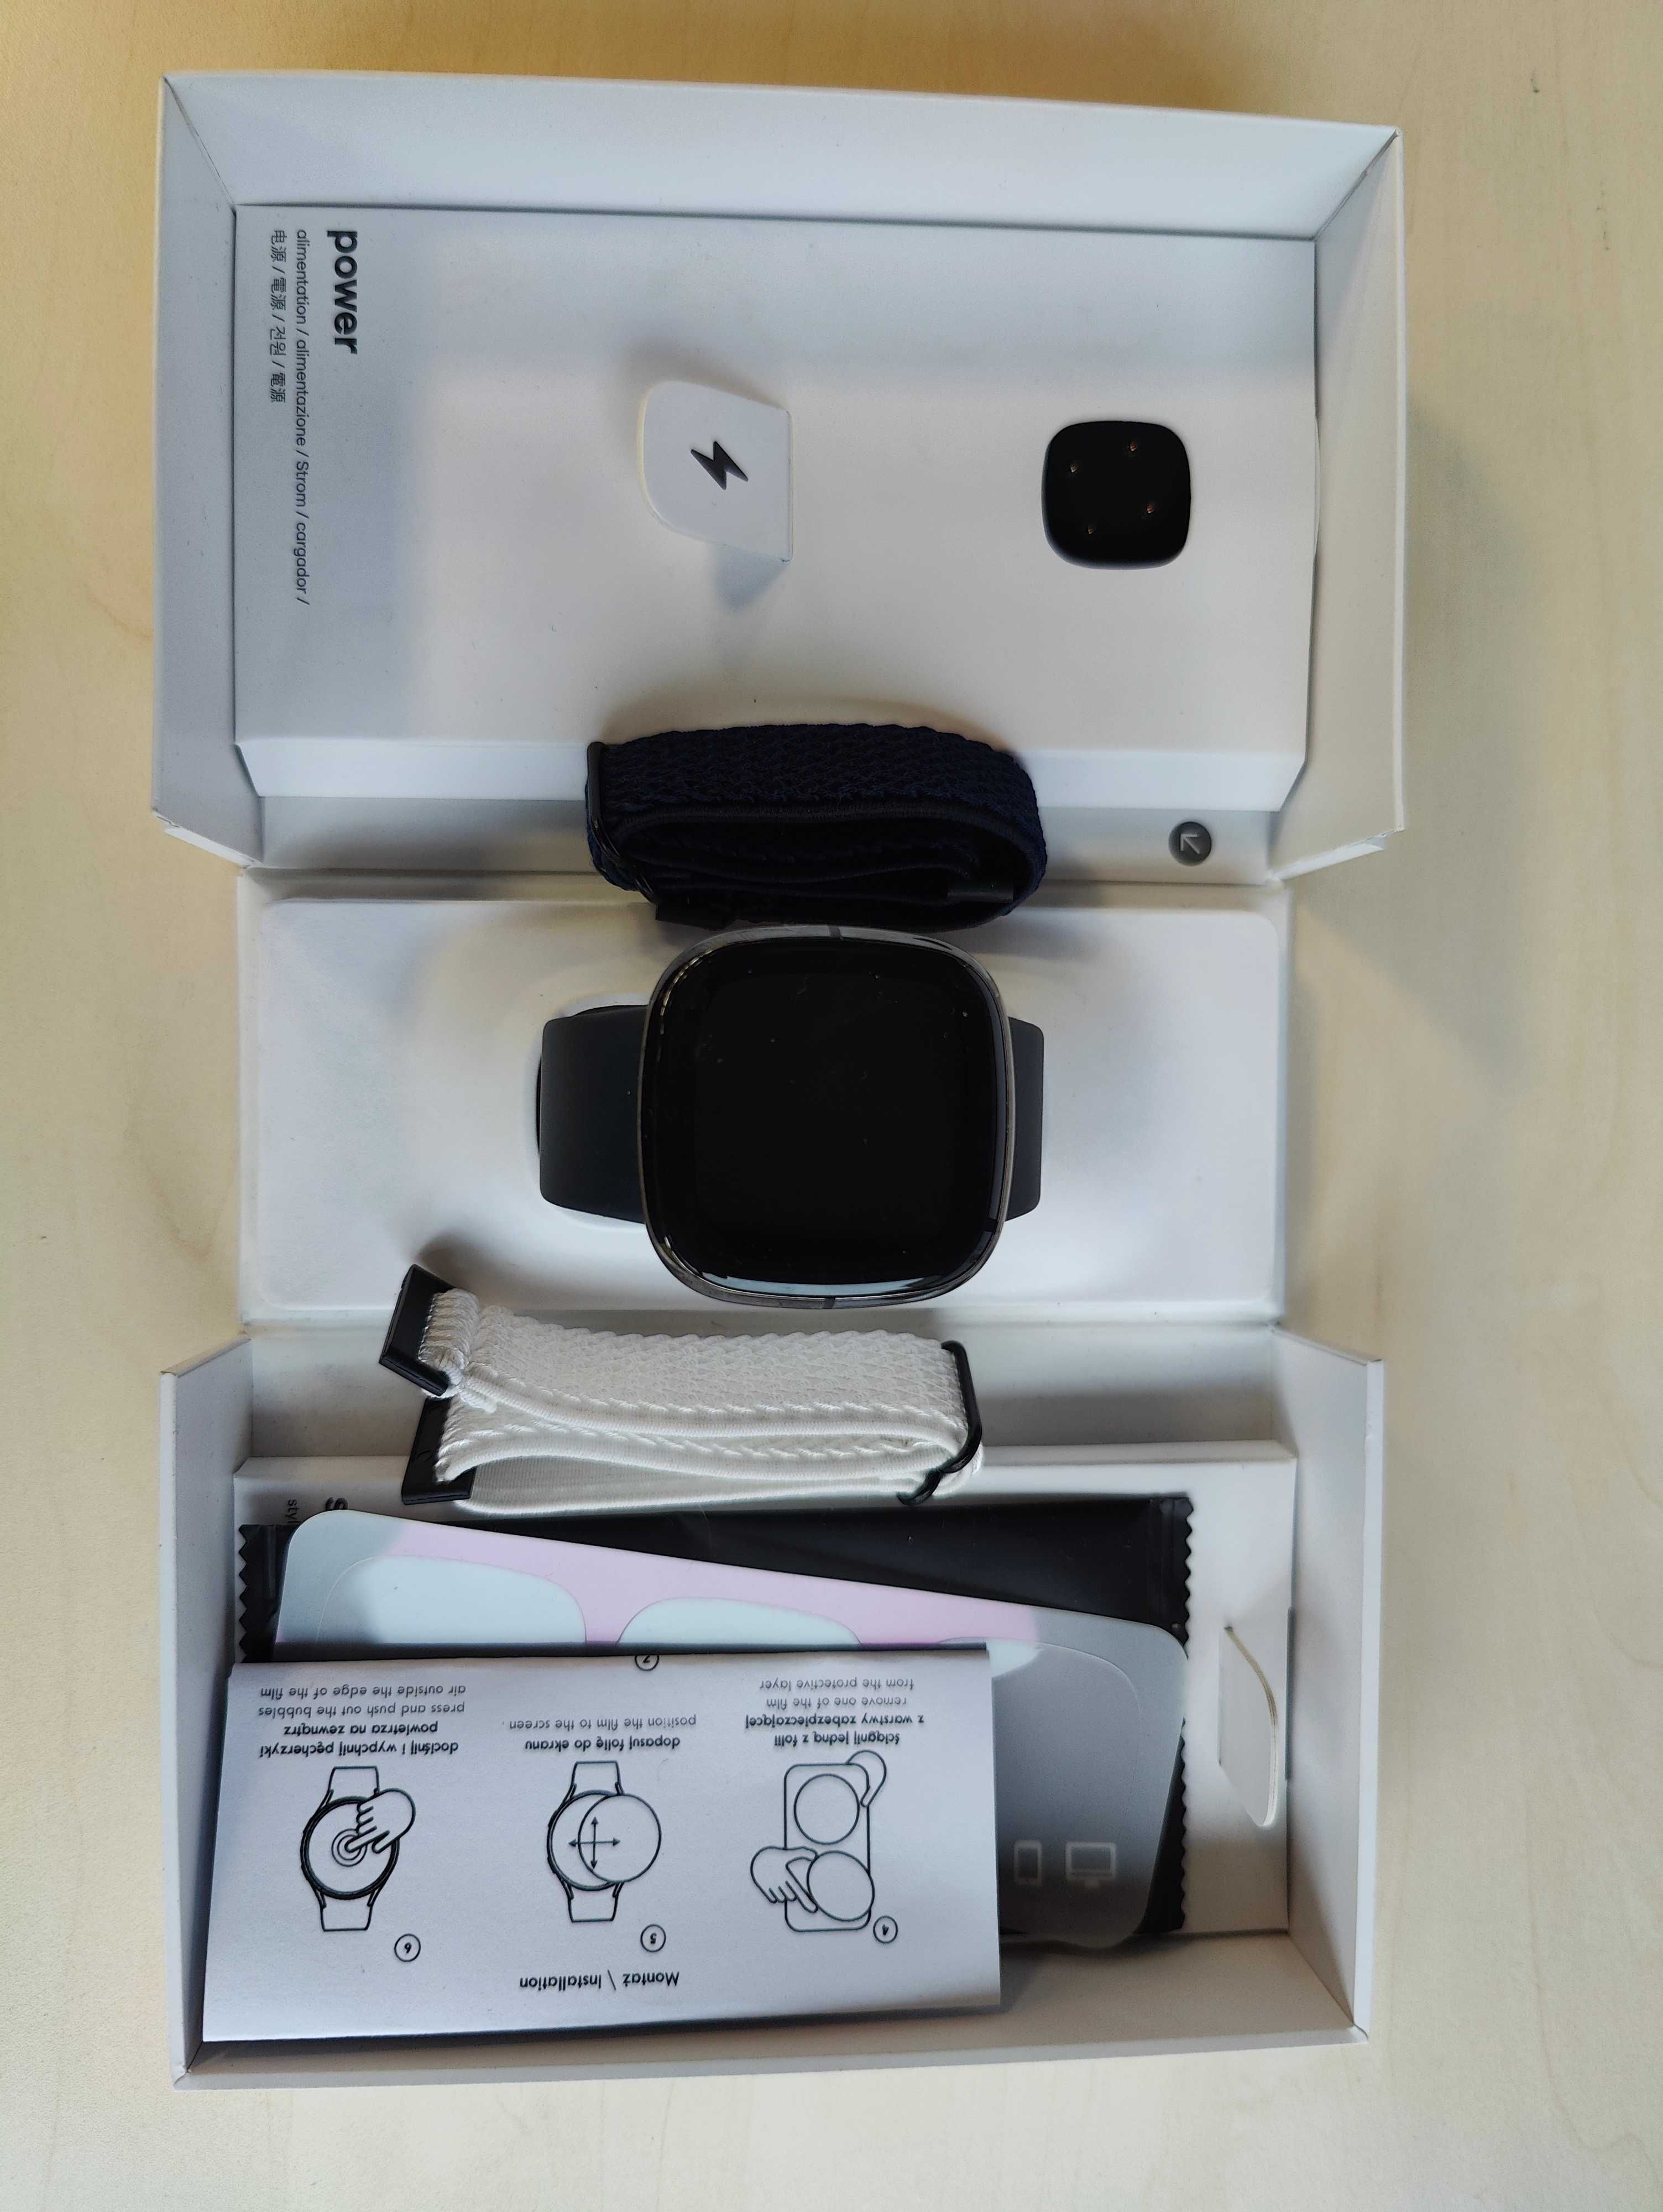 Smartwatch Fitbit Sense + accesorii